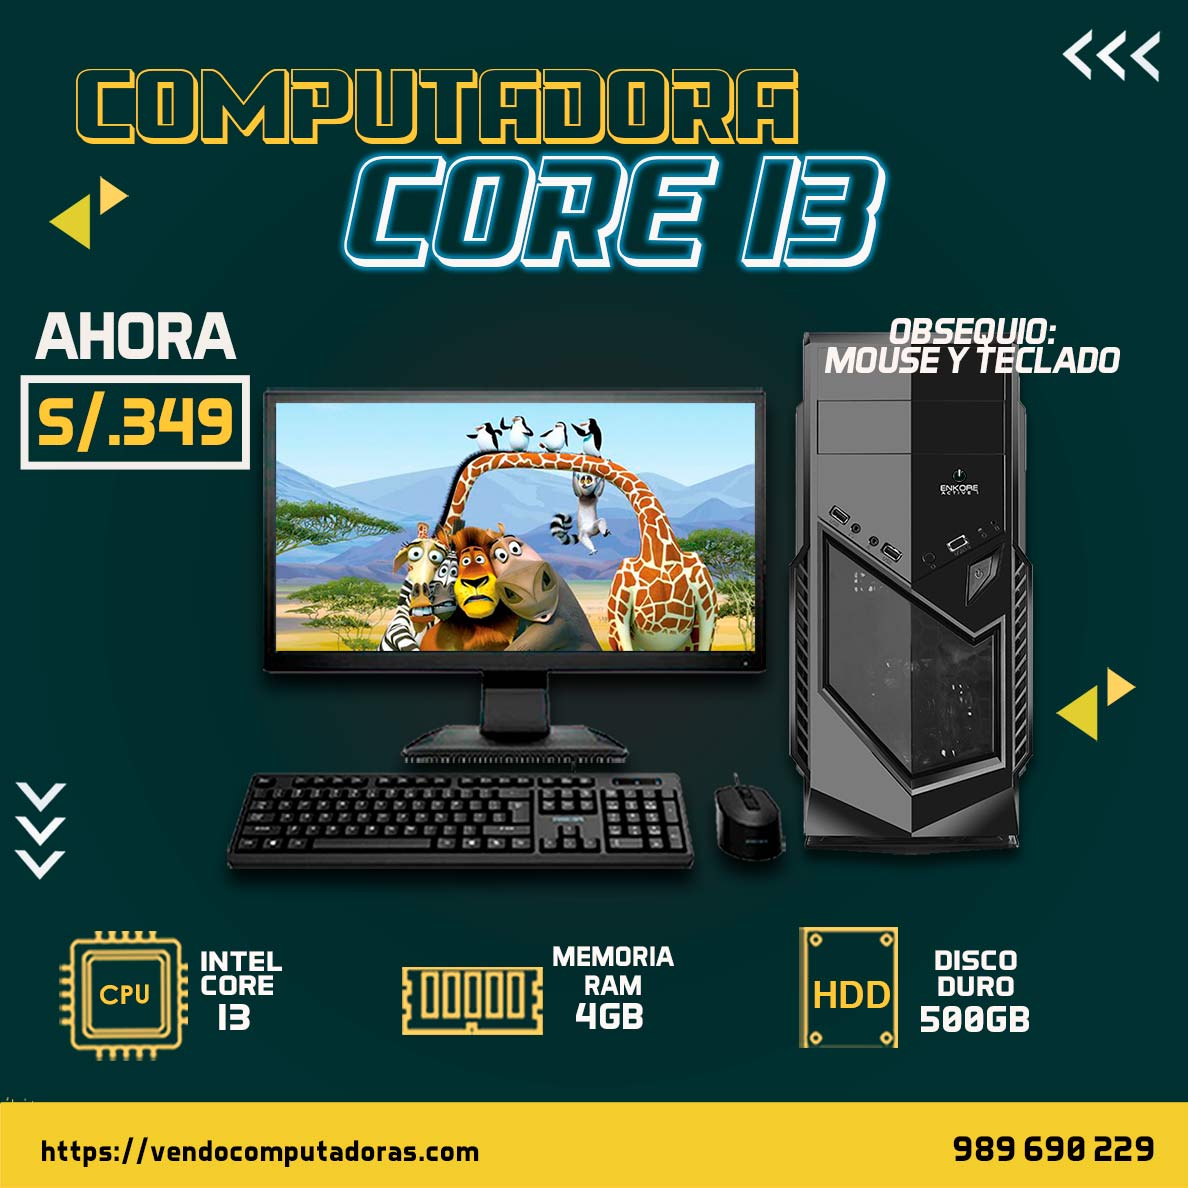 Computadora Core I3 en descuento